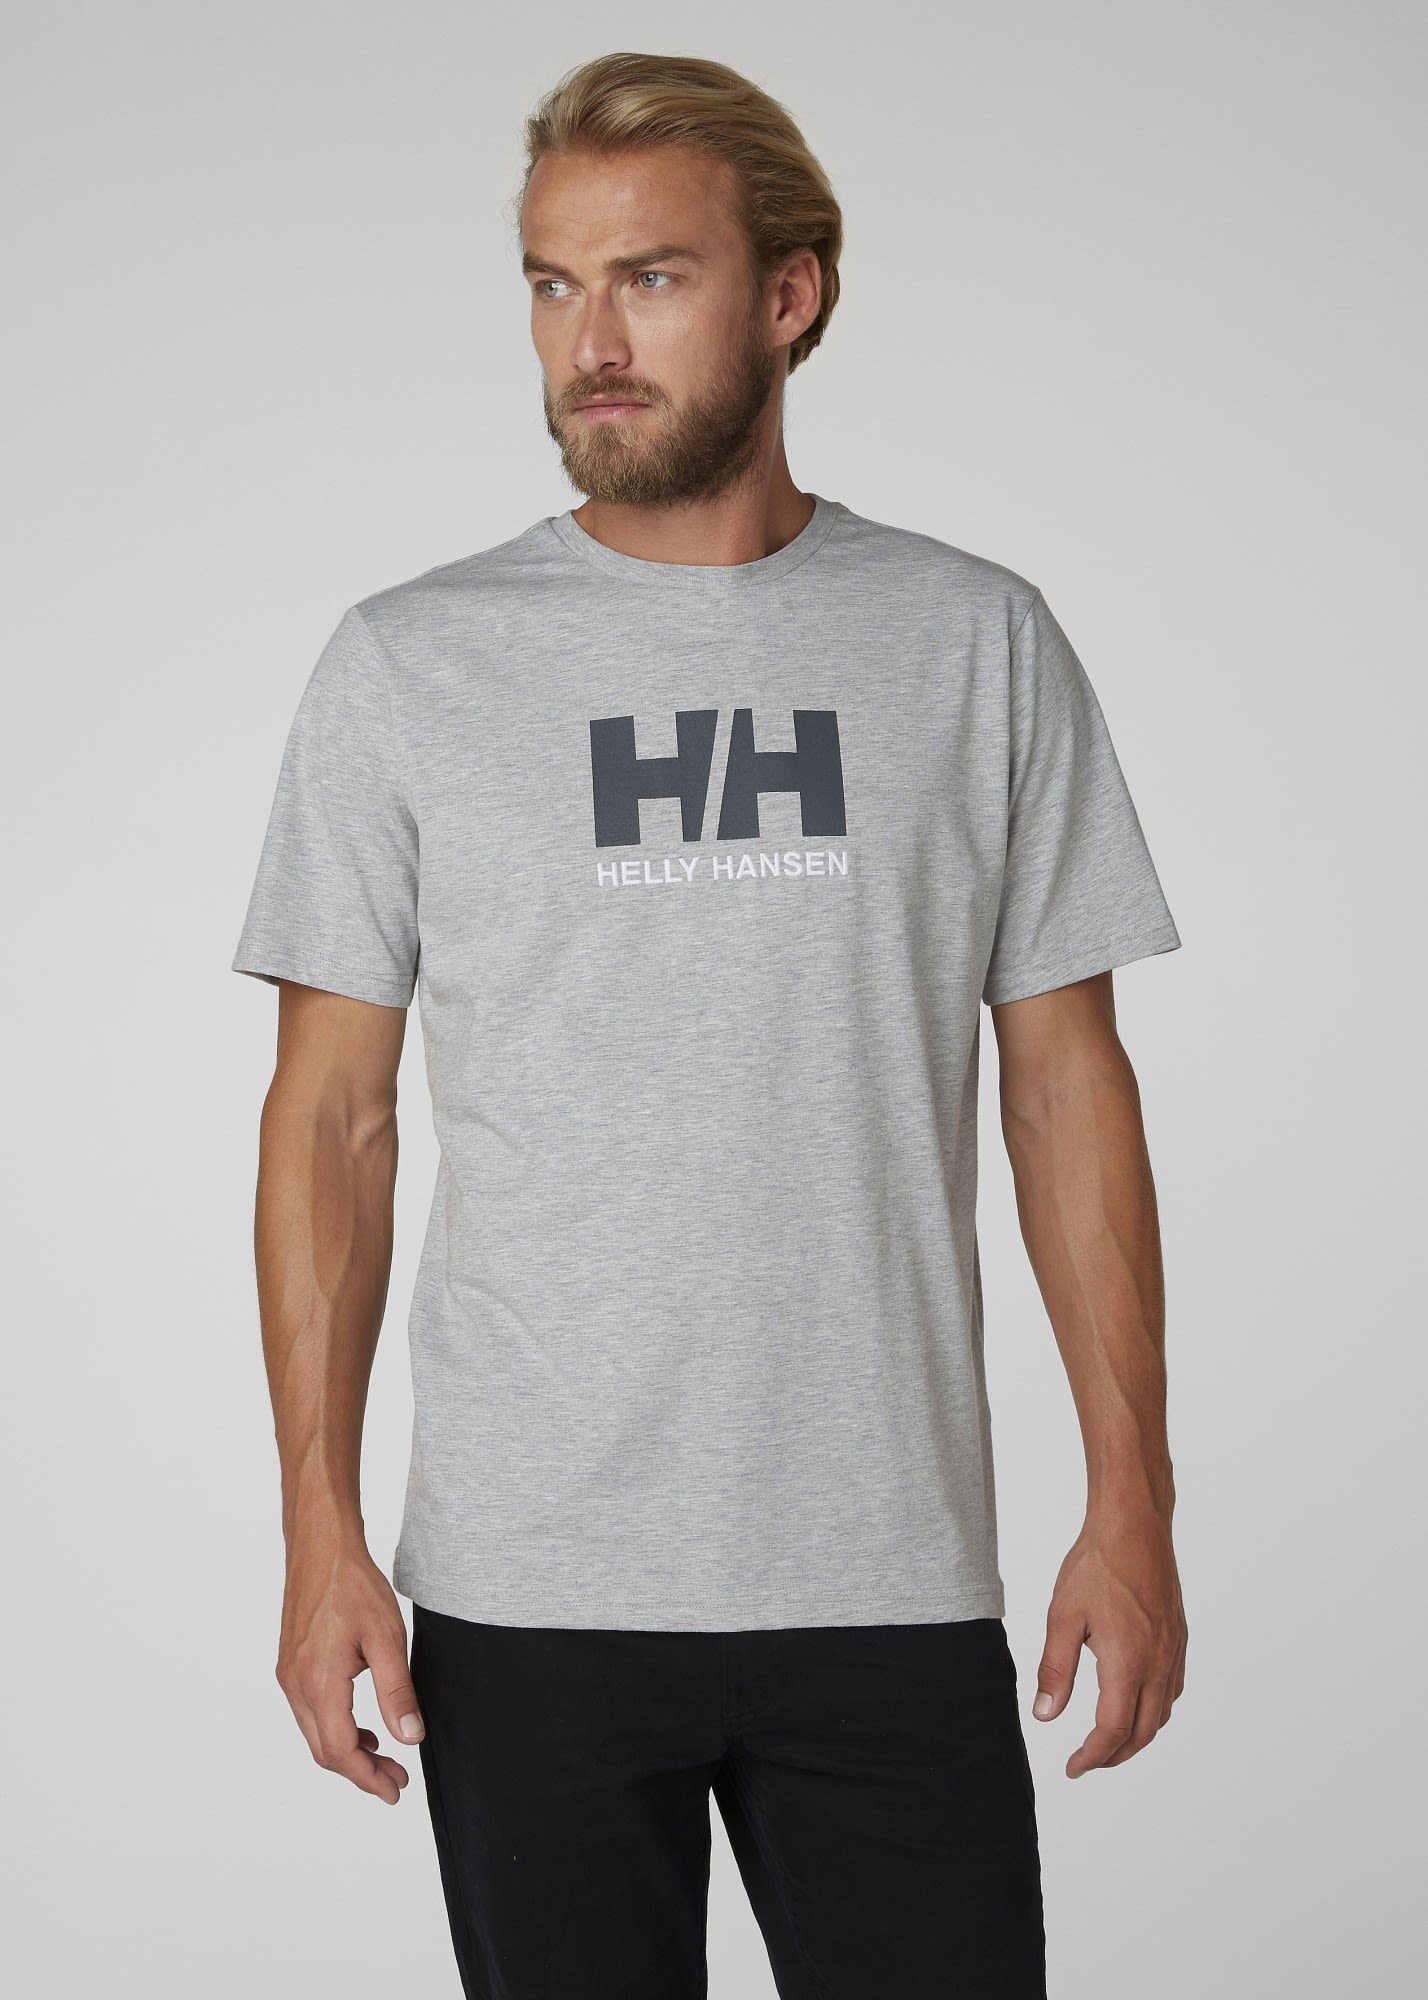 Helly M T-Shirt Grey Melange Hansen Hansen T-shirt Herren Logo Helly Hh